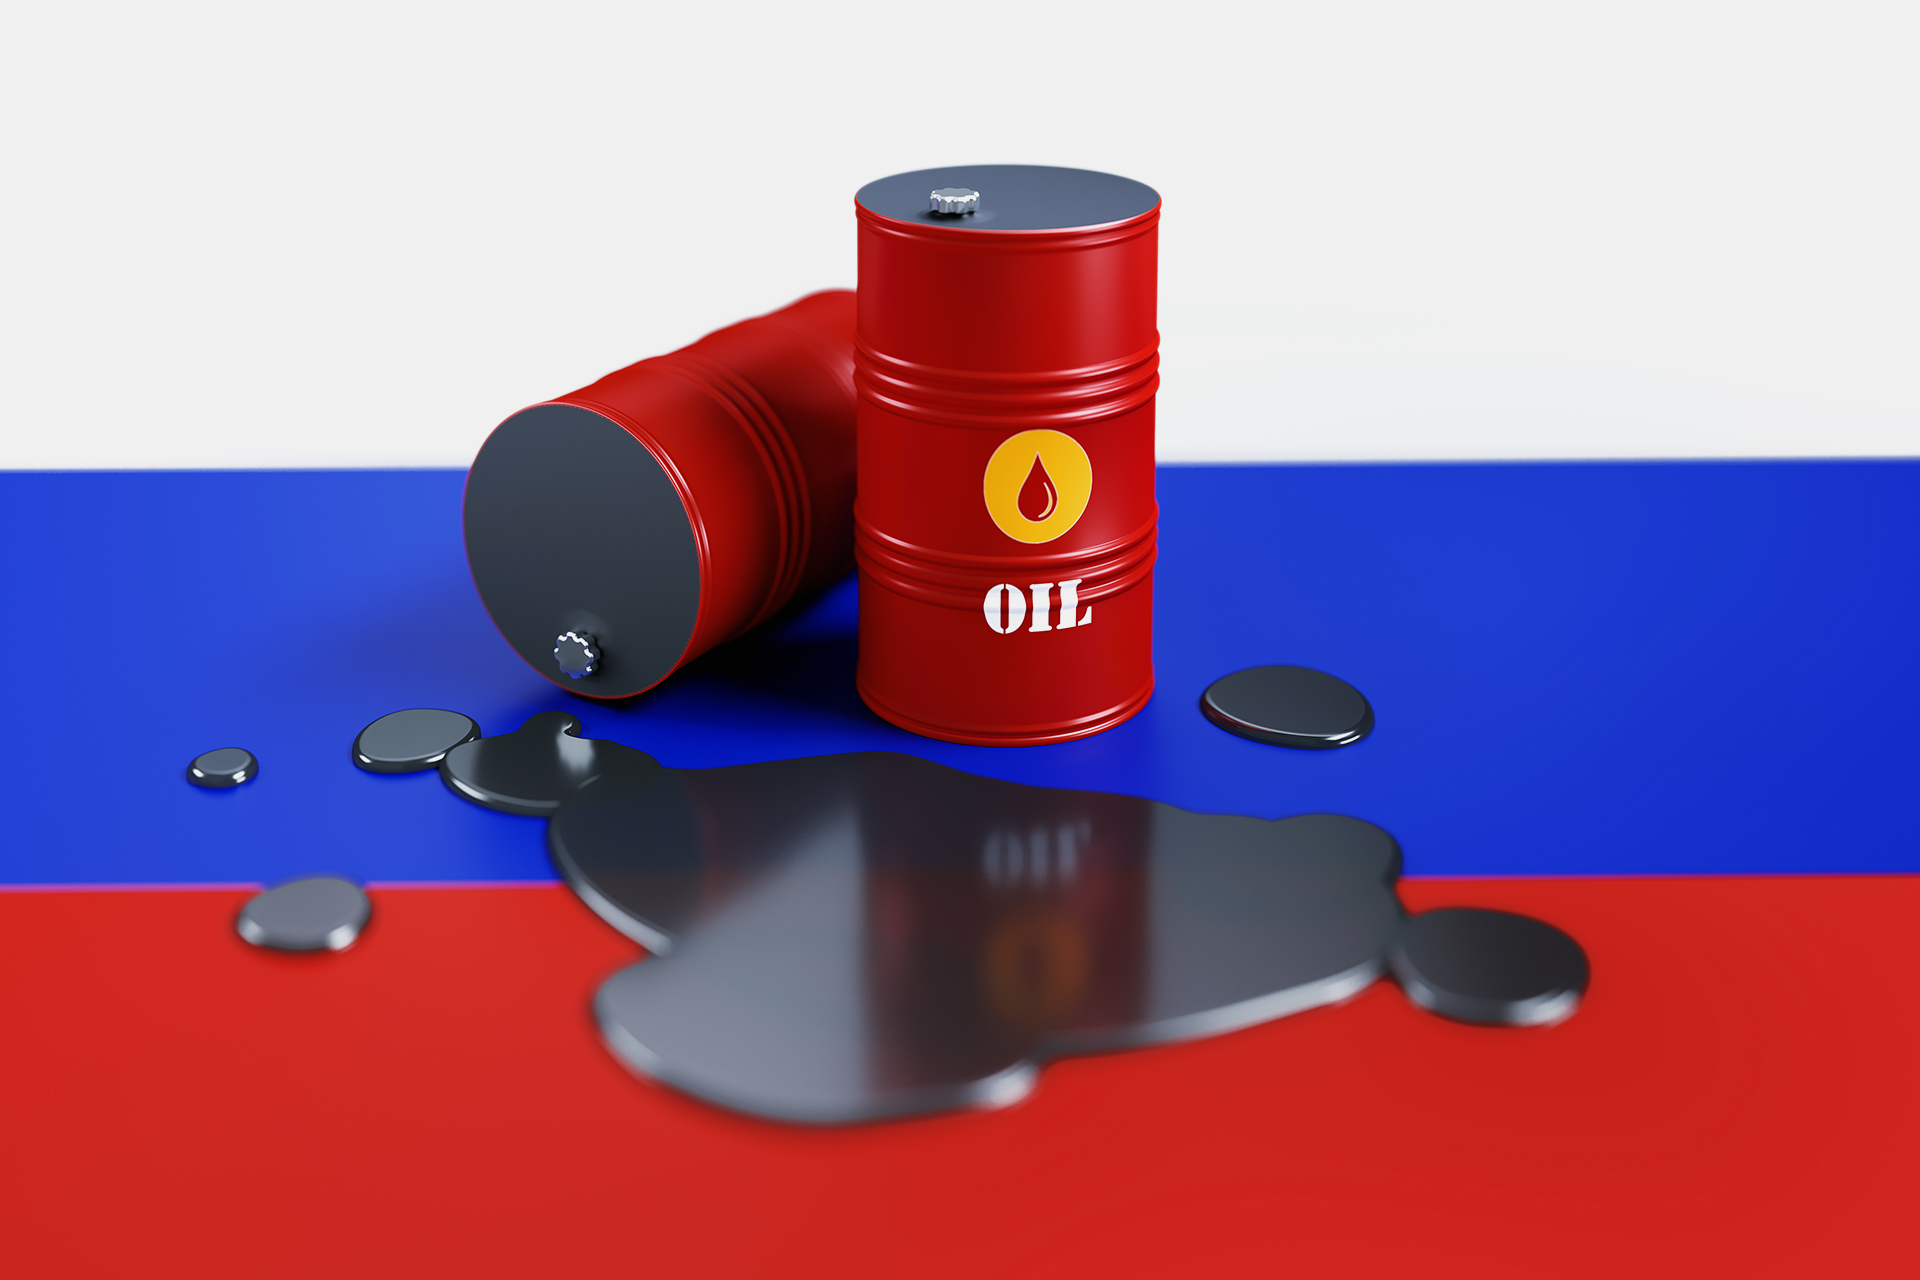 روسيا تحظر صادرات البنزين لـ6 أشهر.. ودول عربية من أهم المستوردين | اقتصاد – البوكس نيوز